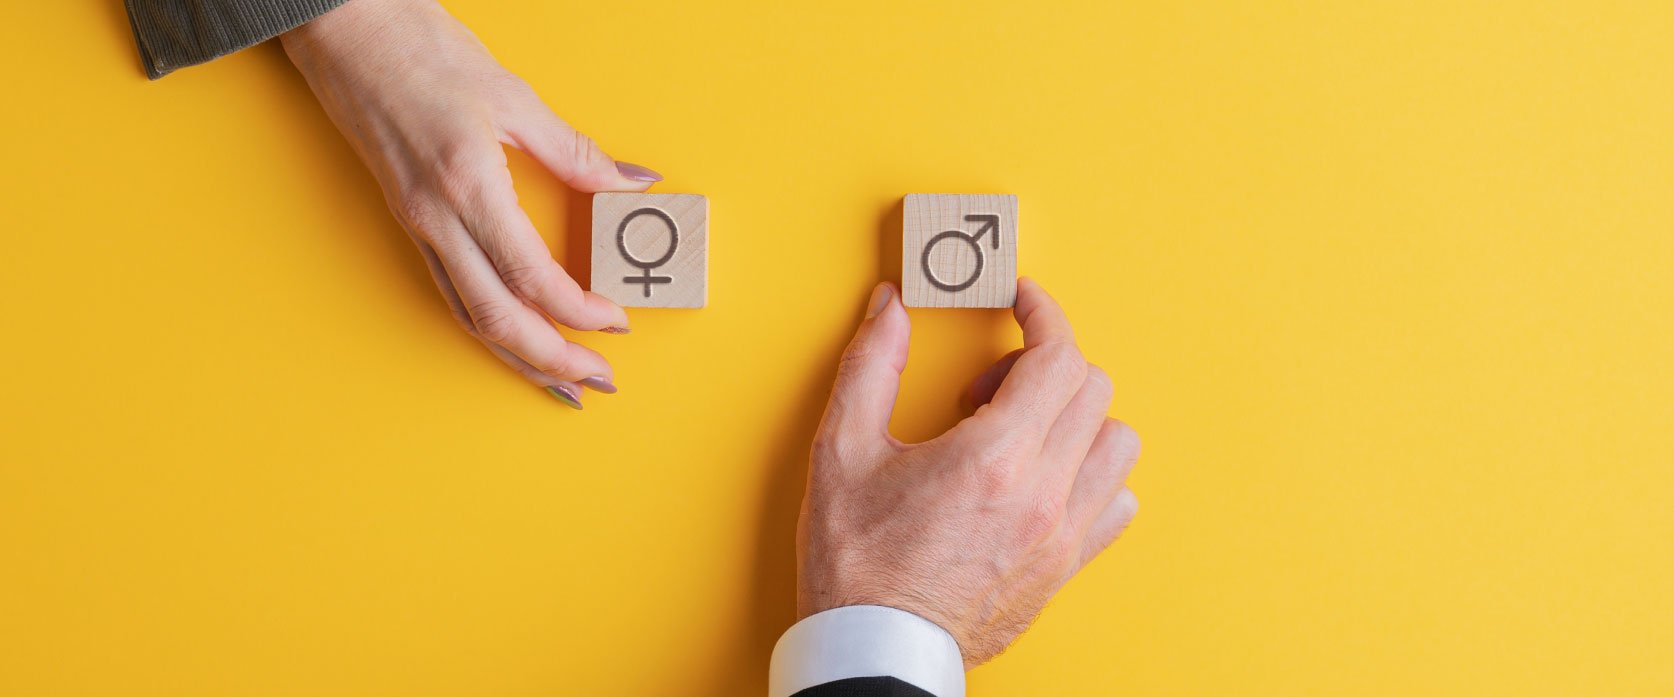 Disparidade de gênero nas empresas diminui, mas passa longe do ideal